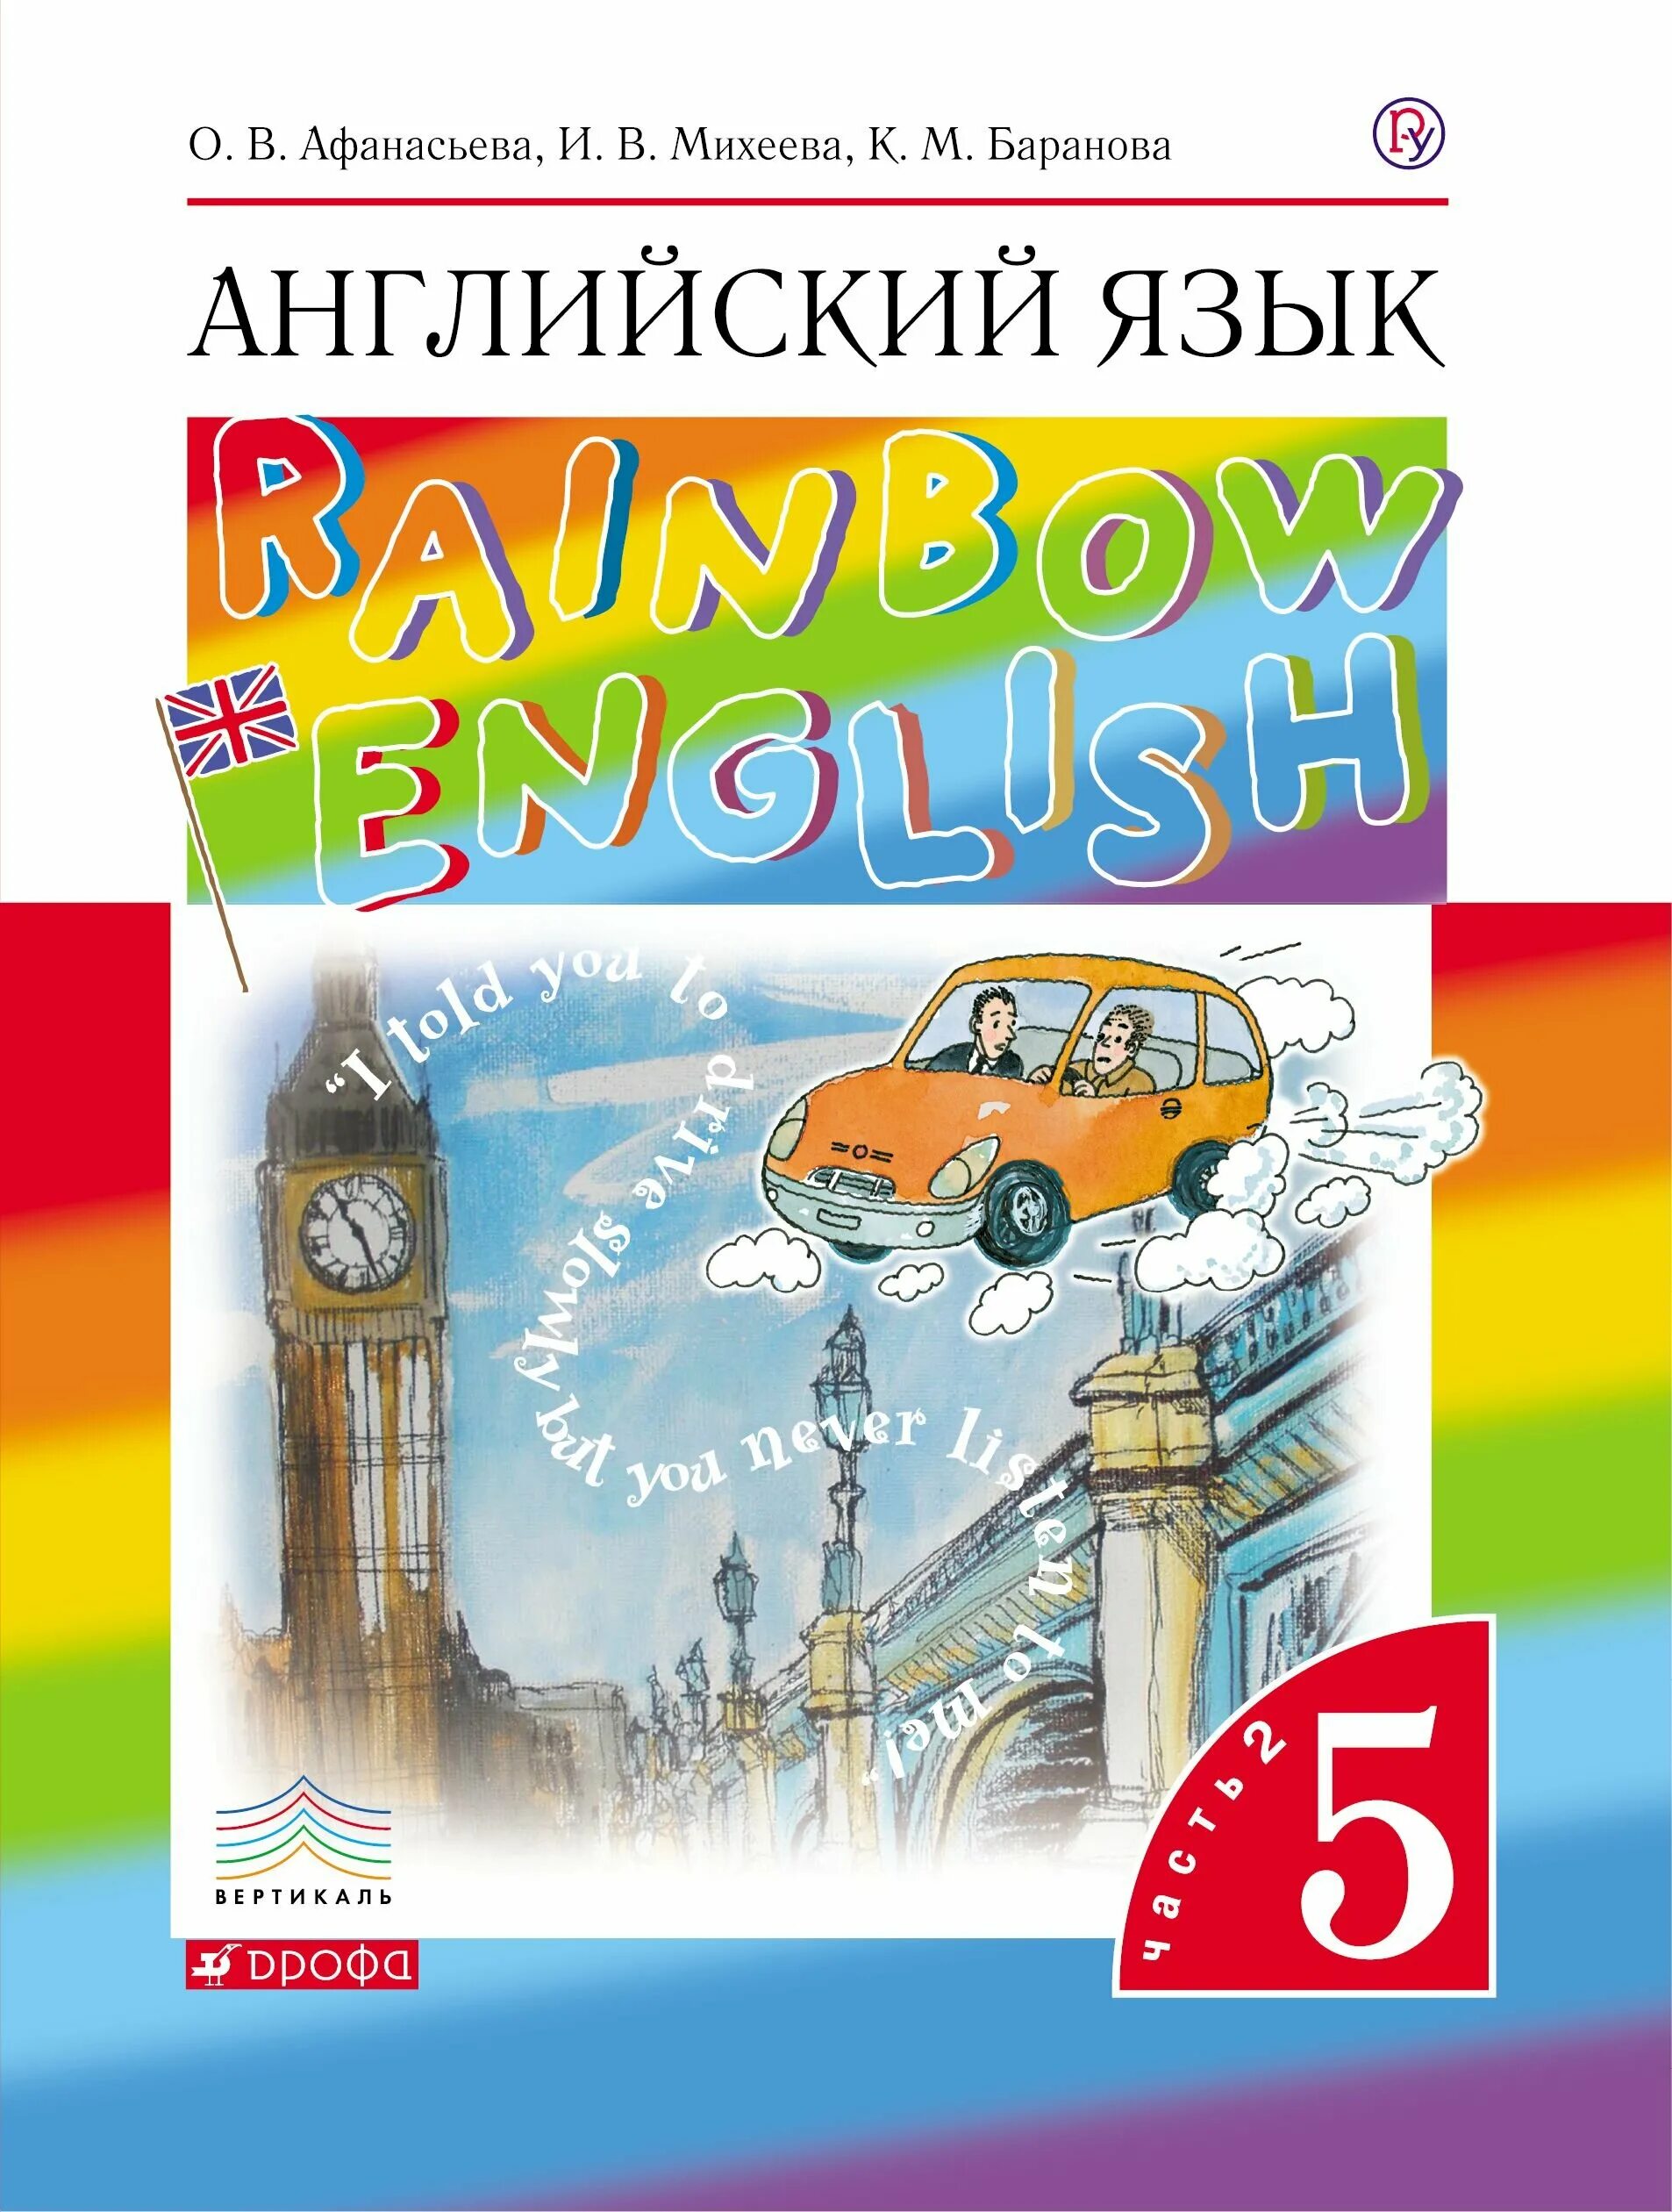 Rainbow второй класс учебник вторая часть. Английский язык 5 класс учебник Rainbow English. Английский язык (в 2 частях) Афанасьева о.в., Баранова к.м., Михеева и.в.. Английский 5 класс учебник Афанасьева. Rainbow English 5 класс учебник.